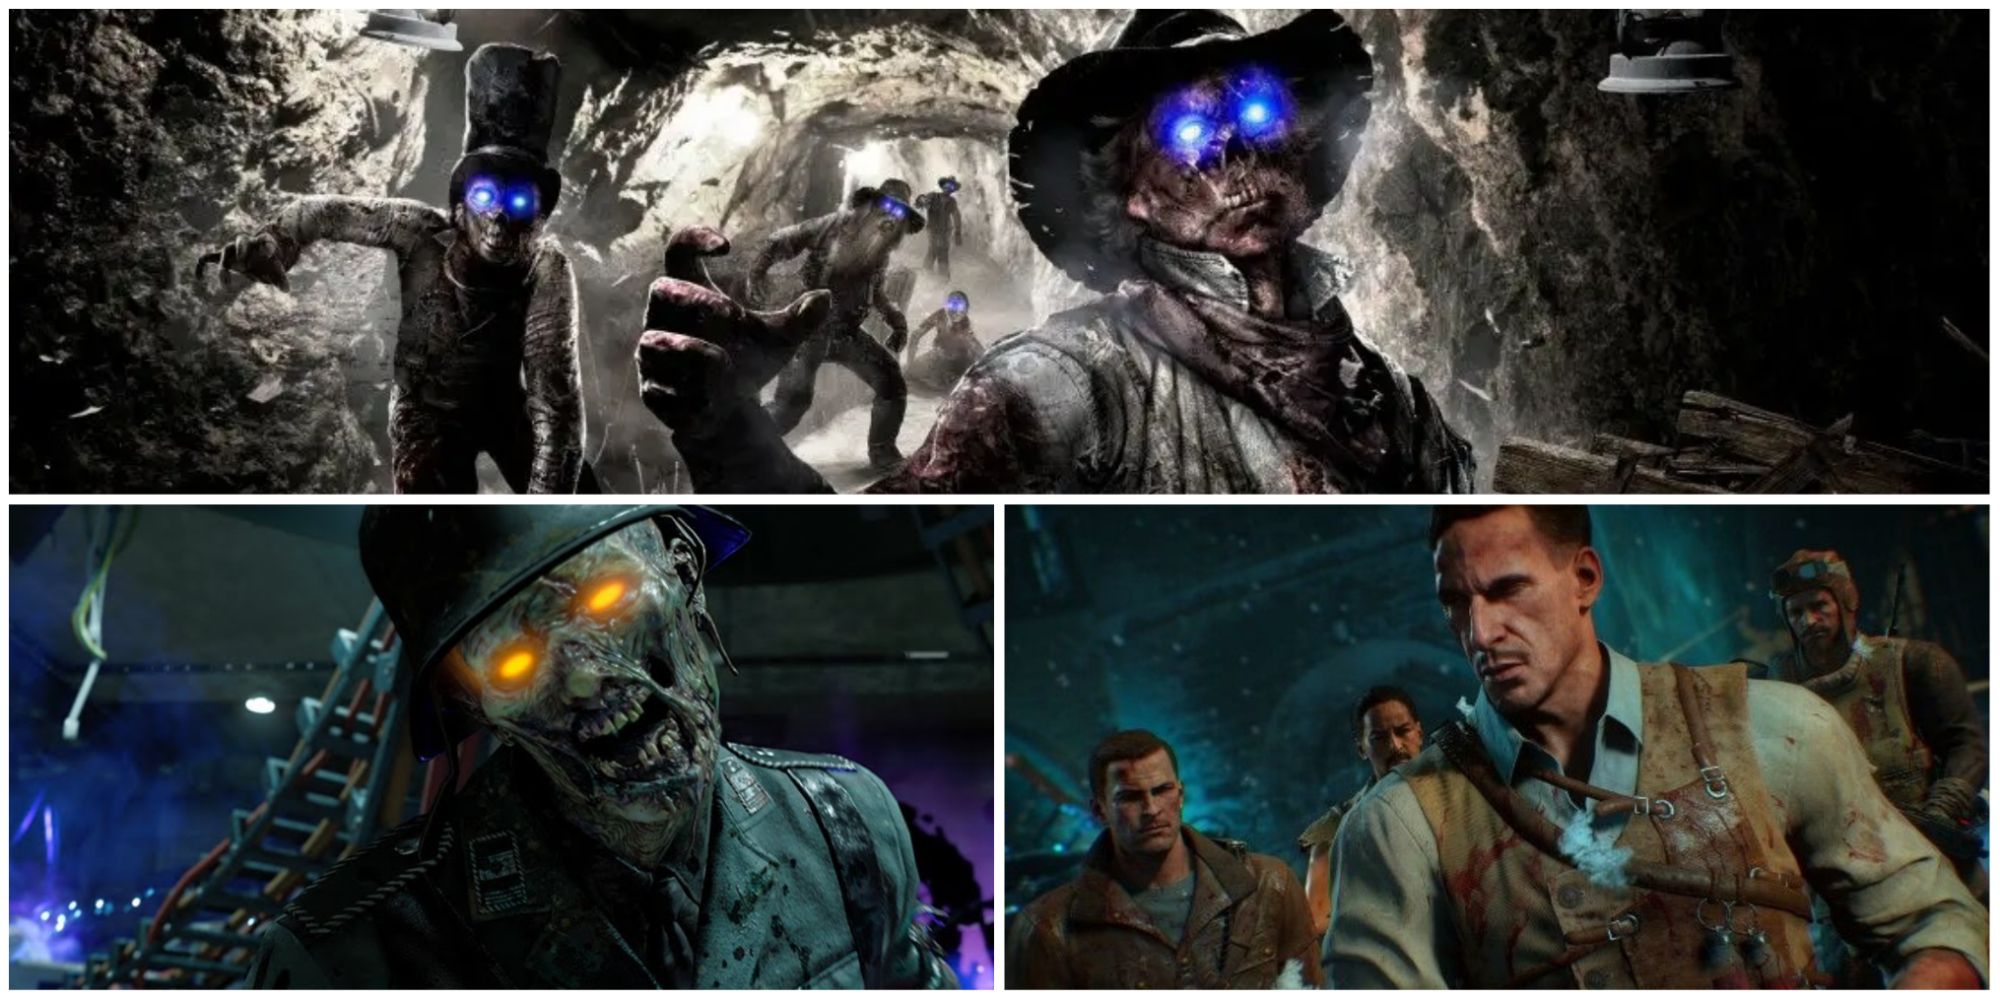 Hry Call of Duty s nejlepšími zombie režimy